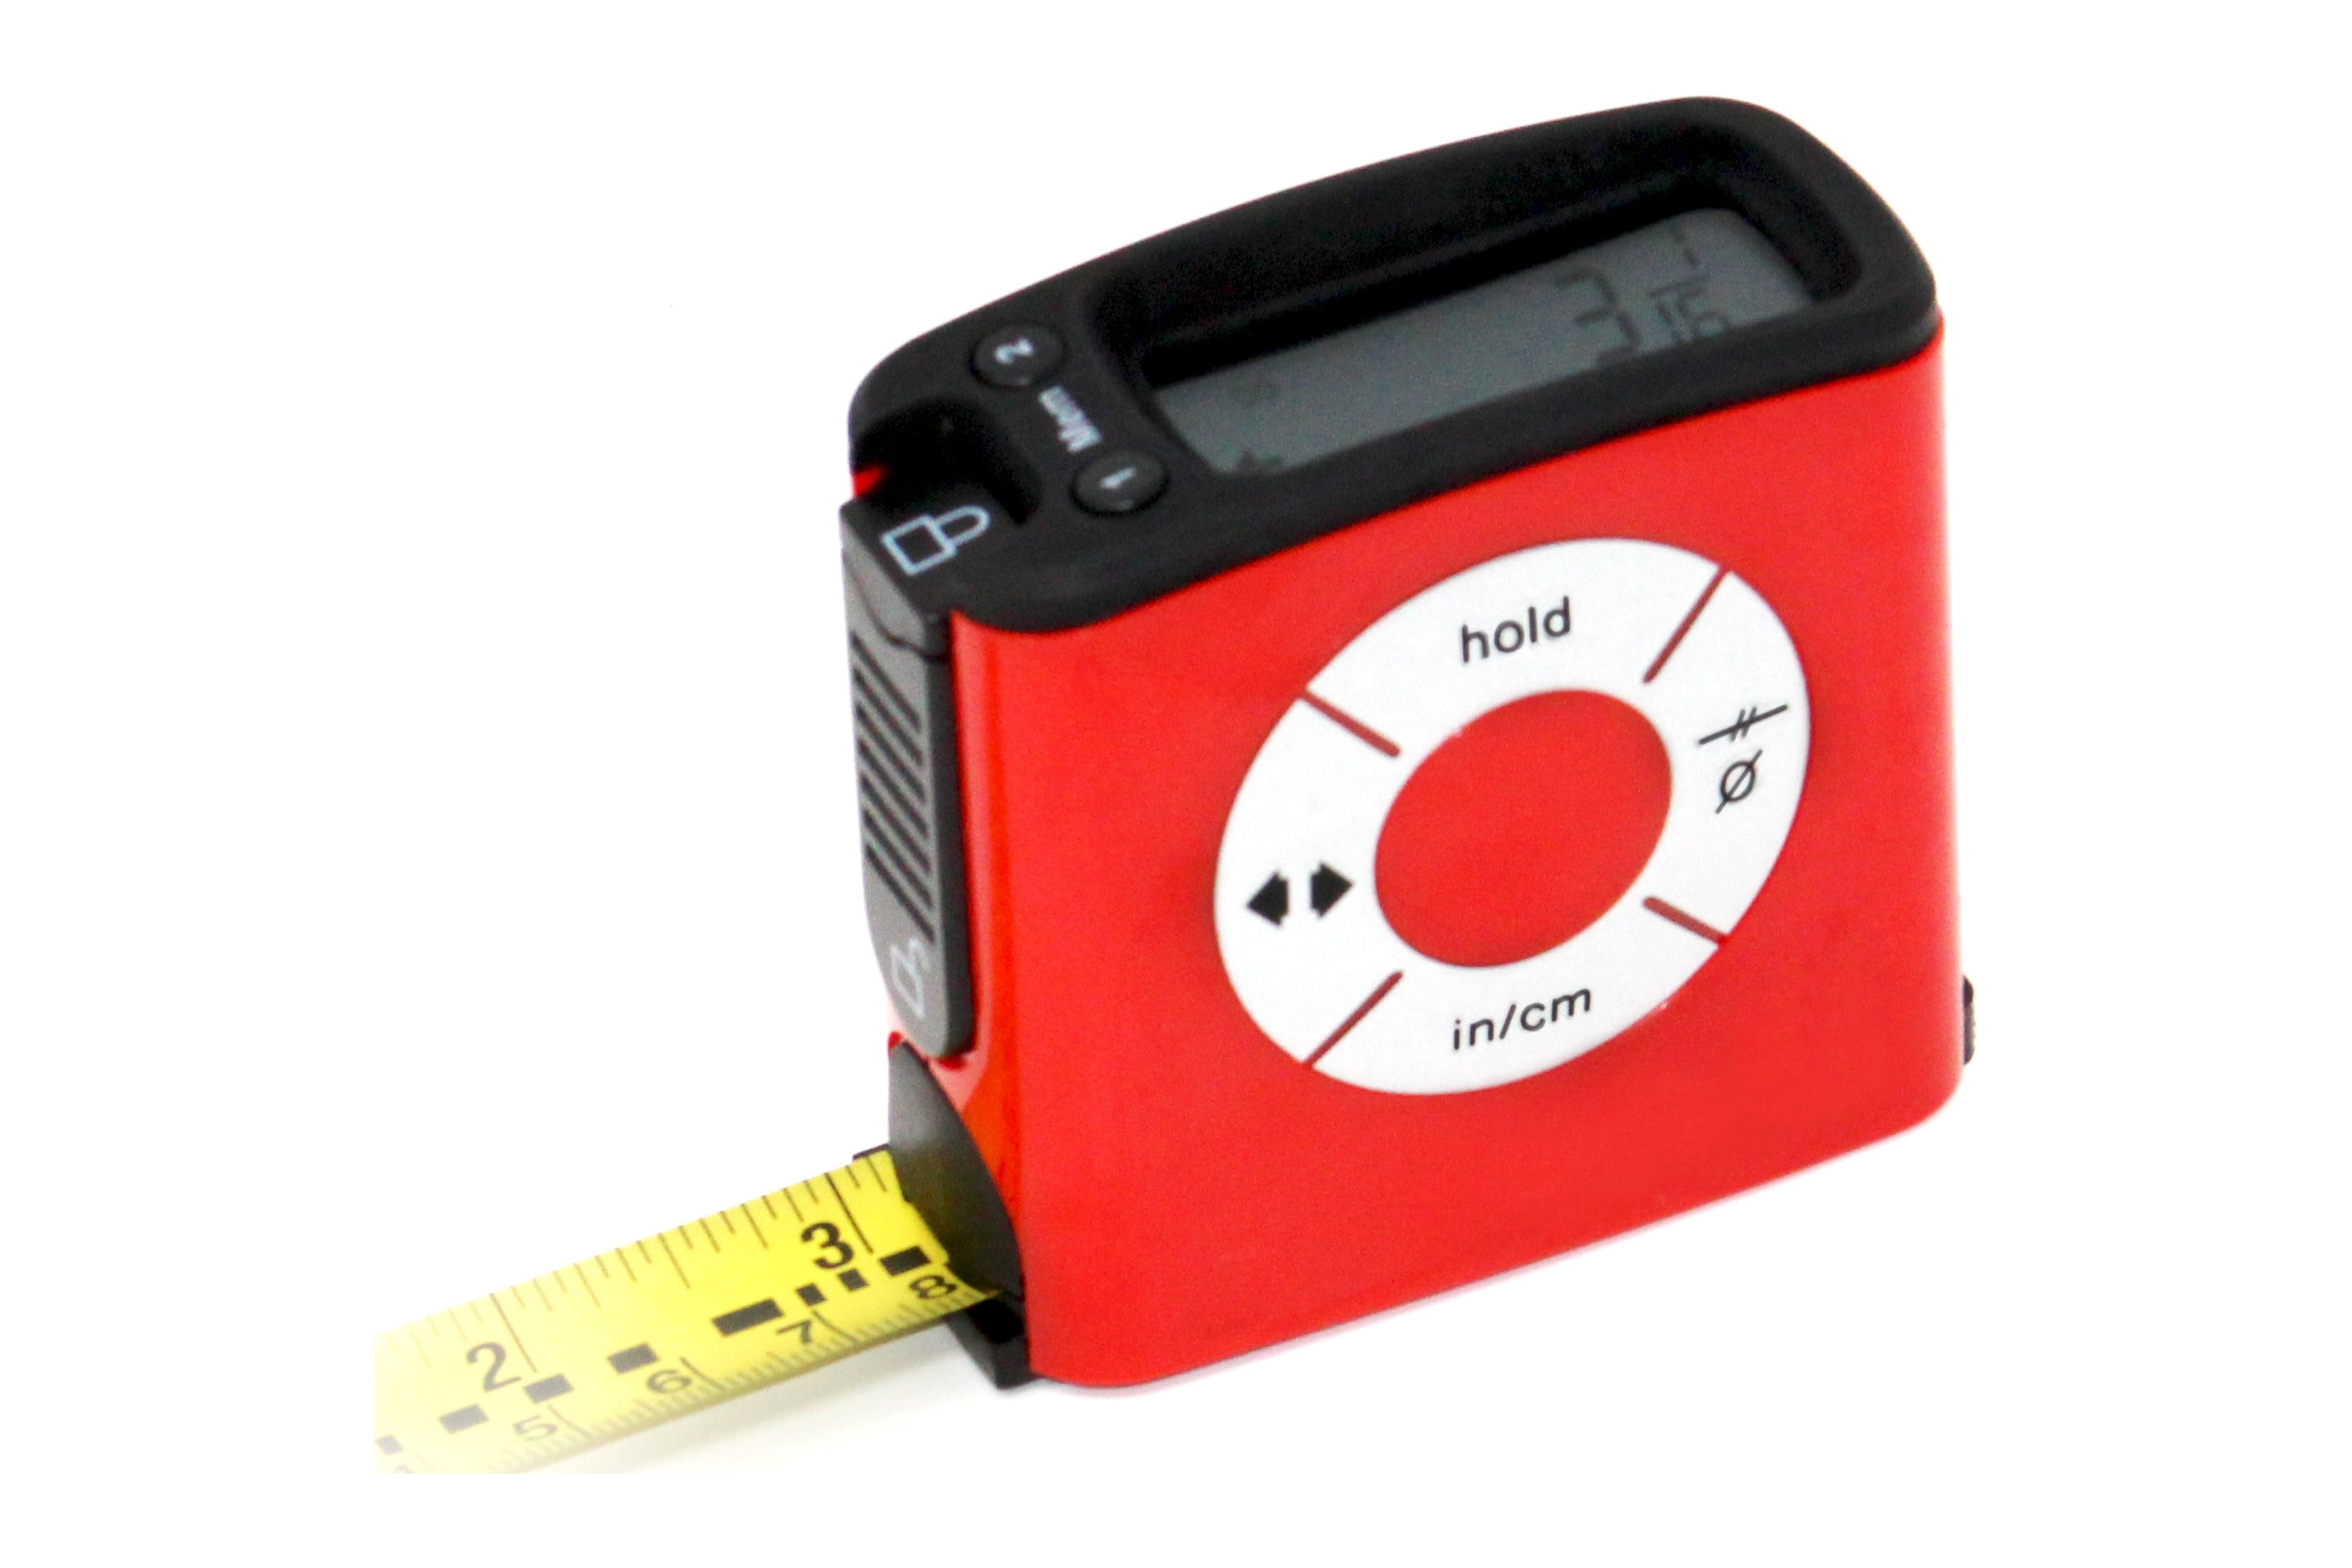 16-Foot Tape Measure